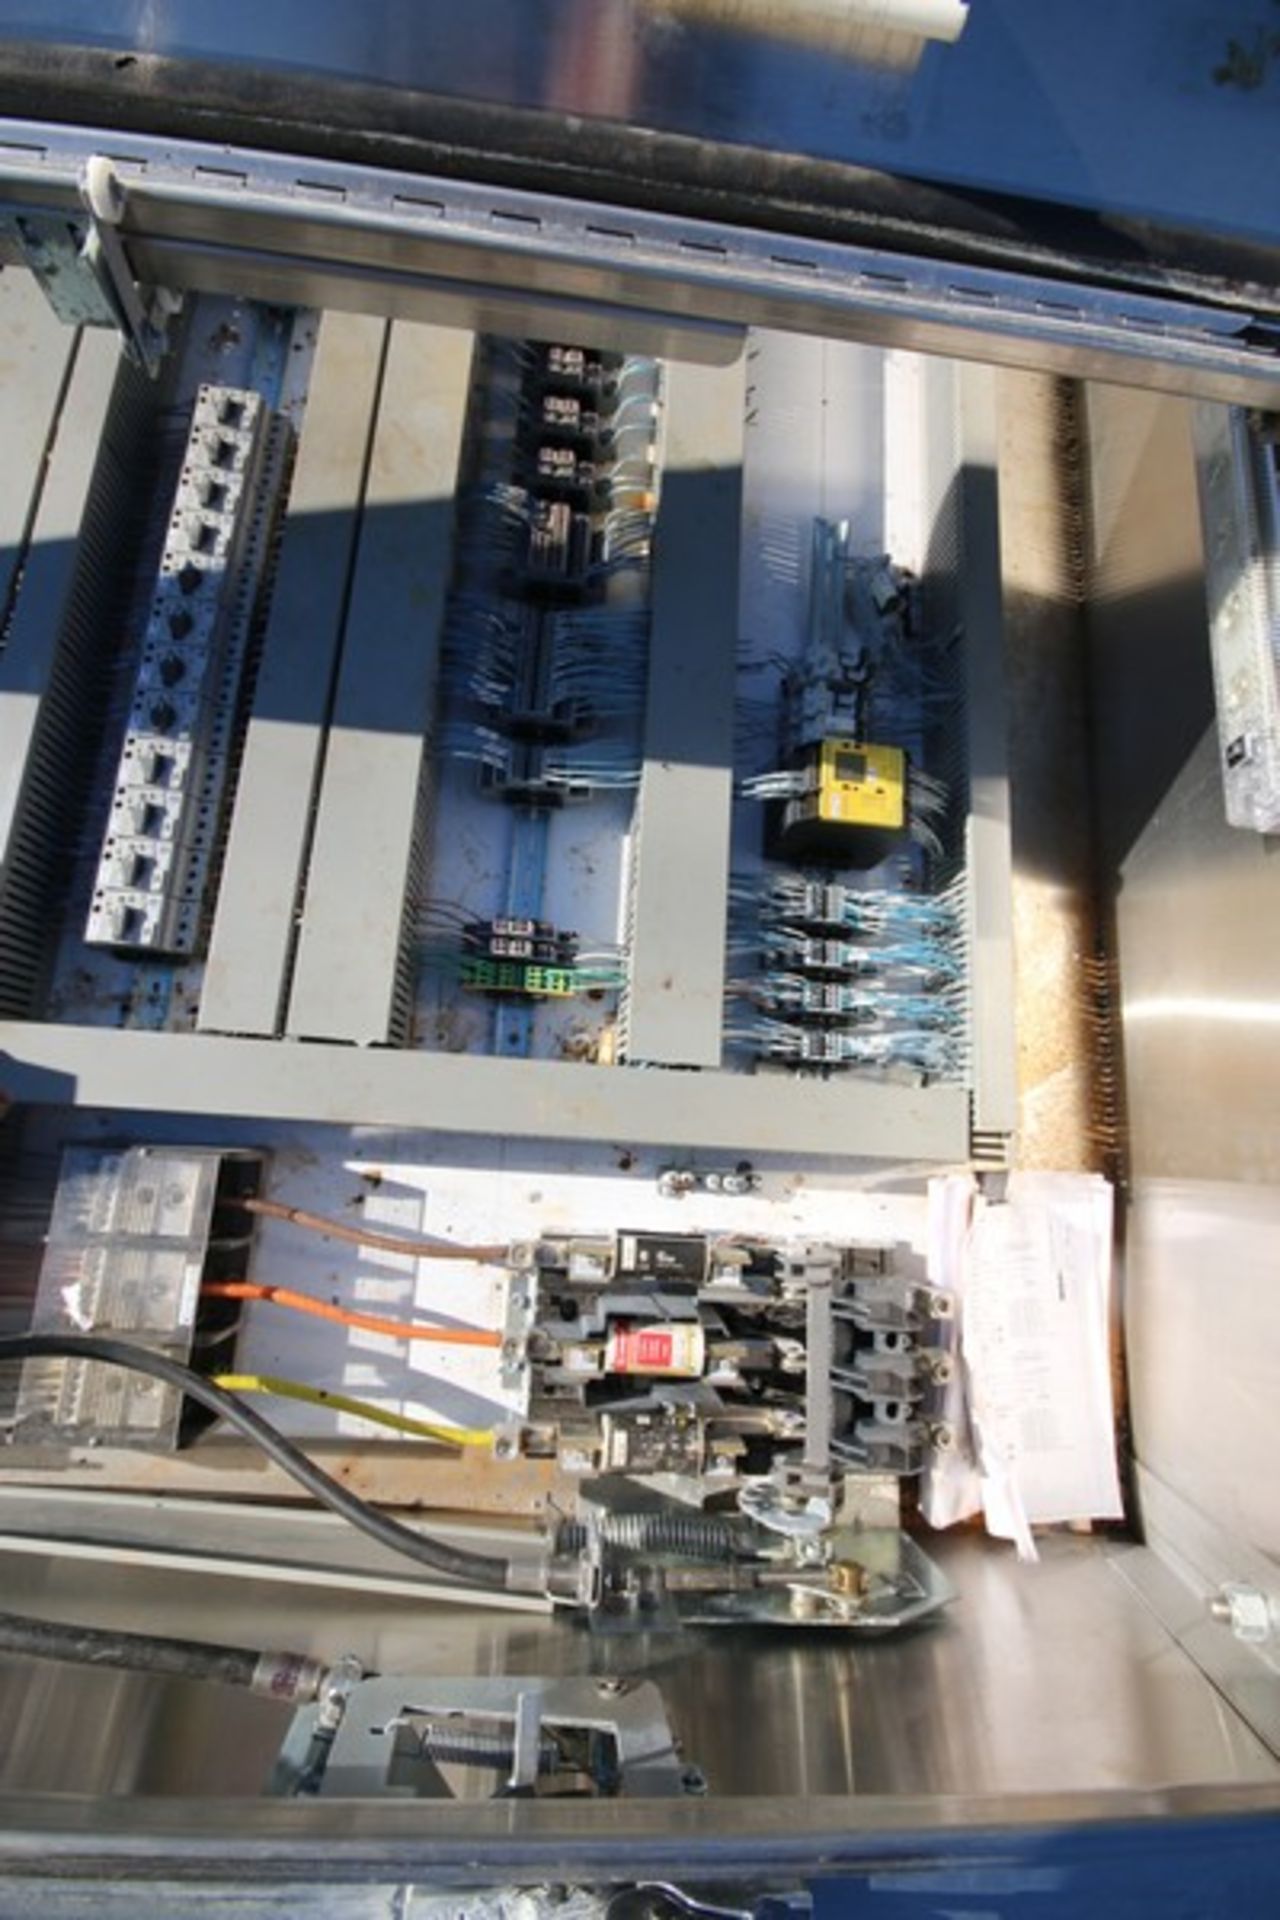 Hoffman 6' H x 62" W x 18" Deep 2 - Door S/S Conveyor Control Panel with Allen Bradley Panelview - Image 4 of 8